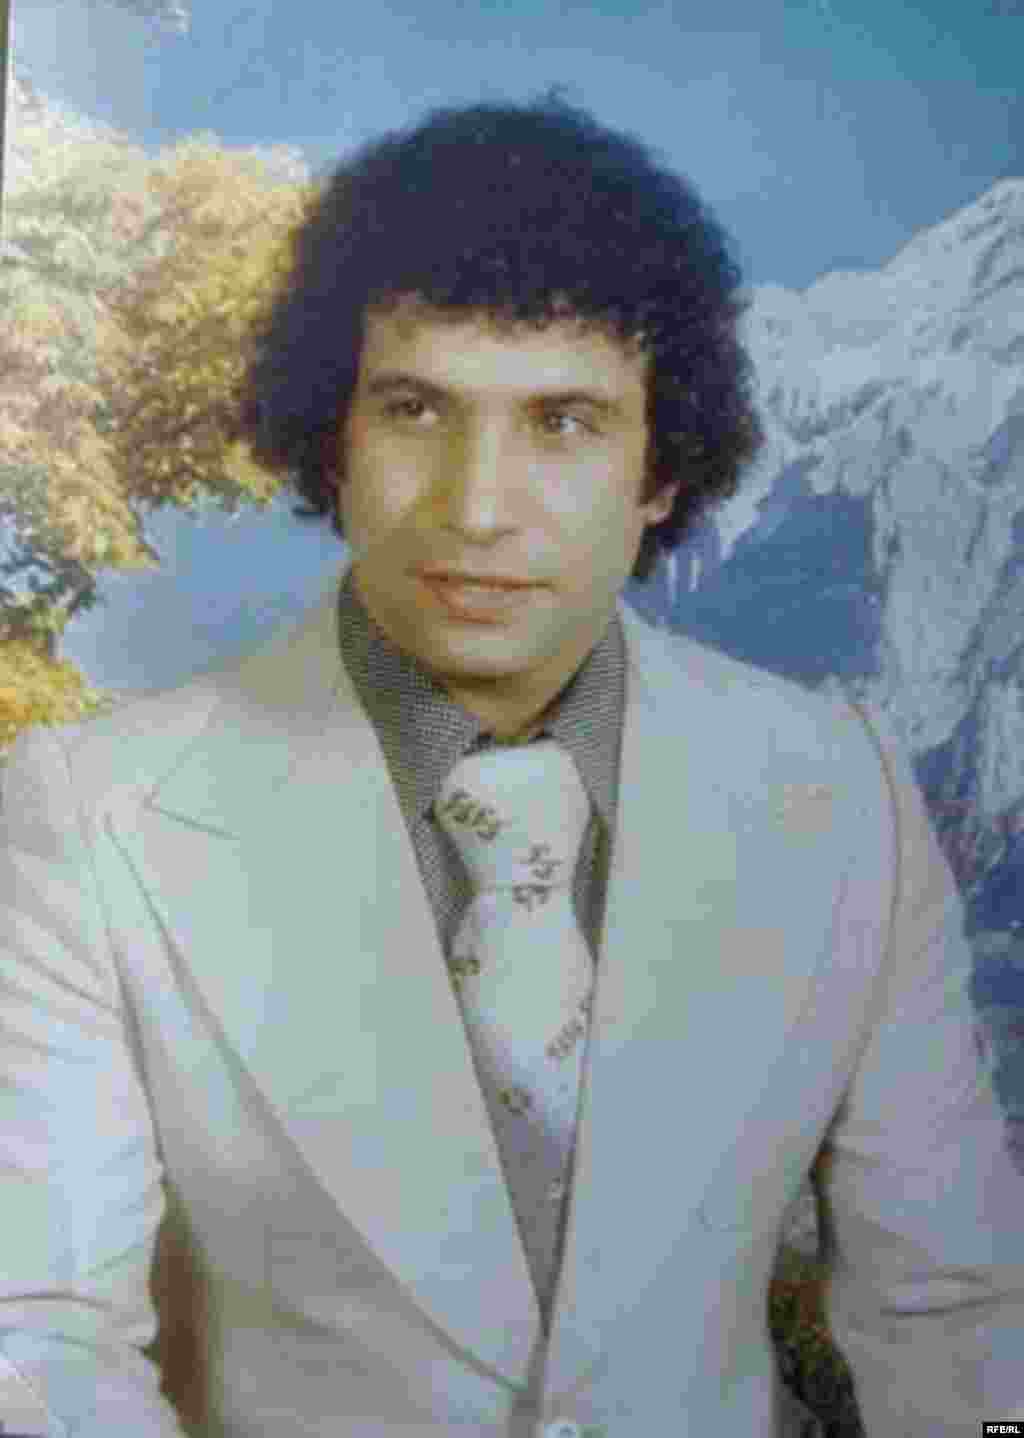 Iran -- Javad Yassari, Iranian singer based on Dubai, Undated